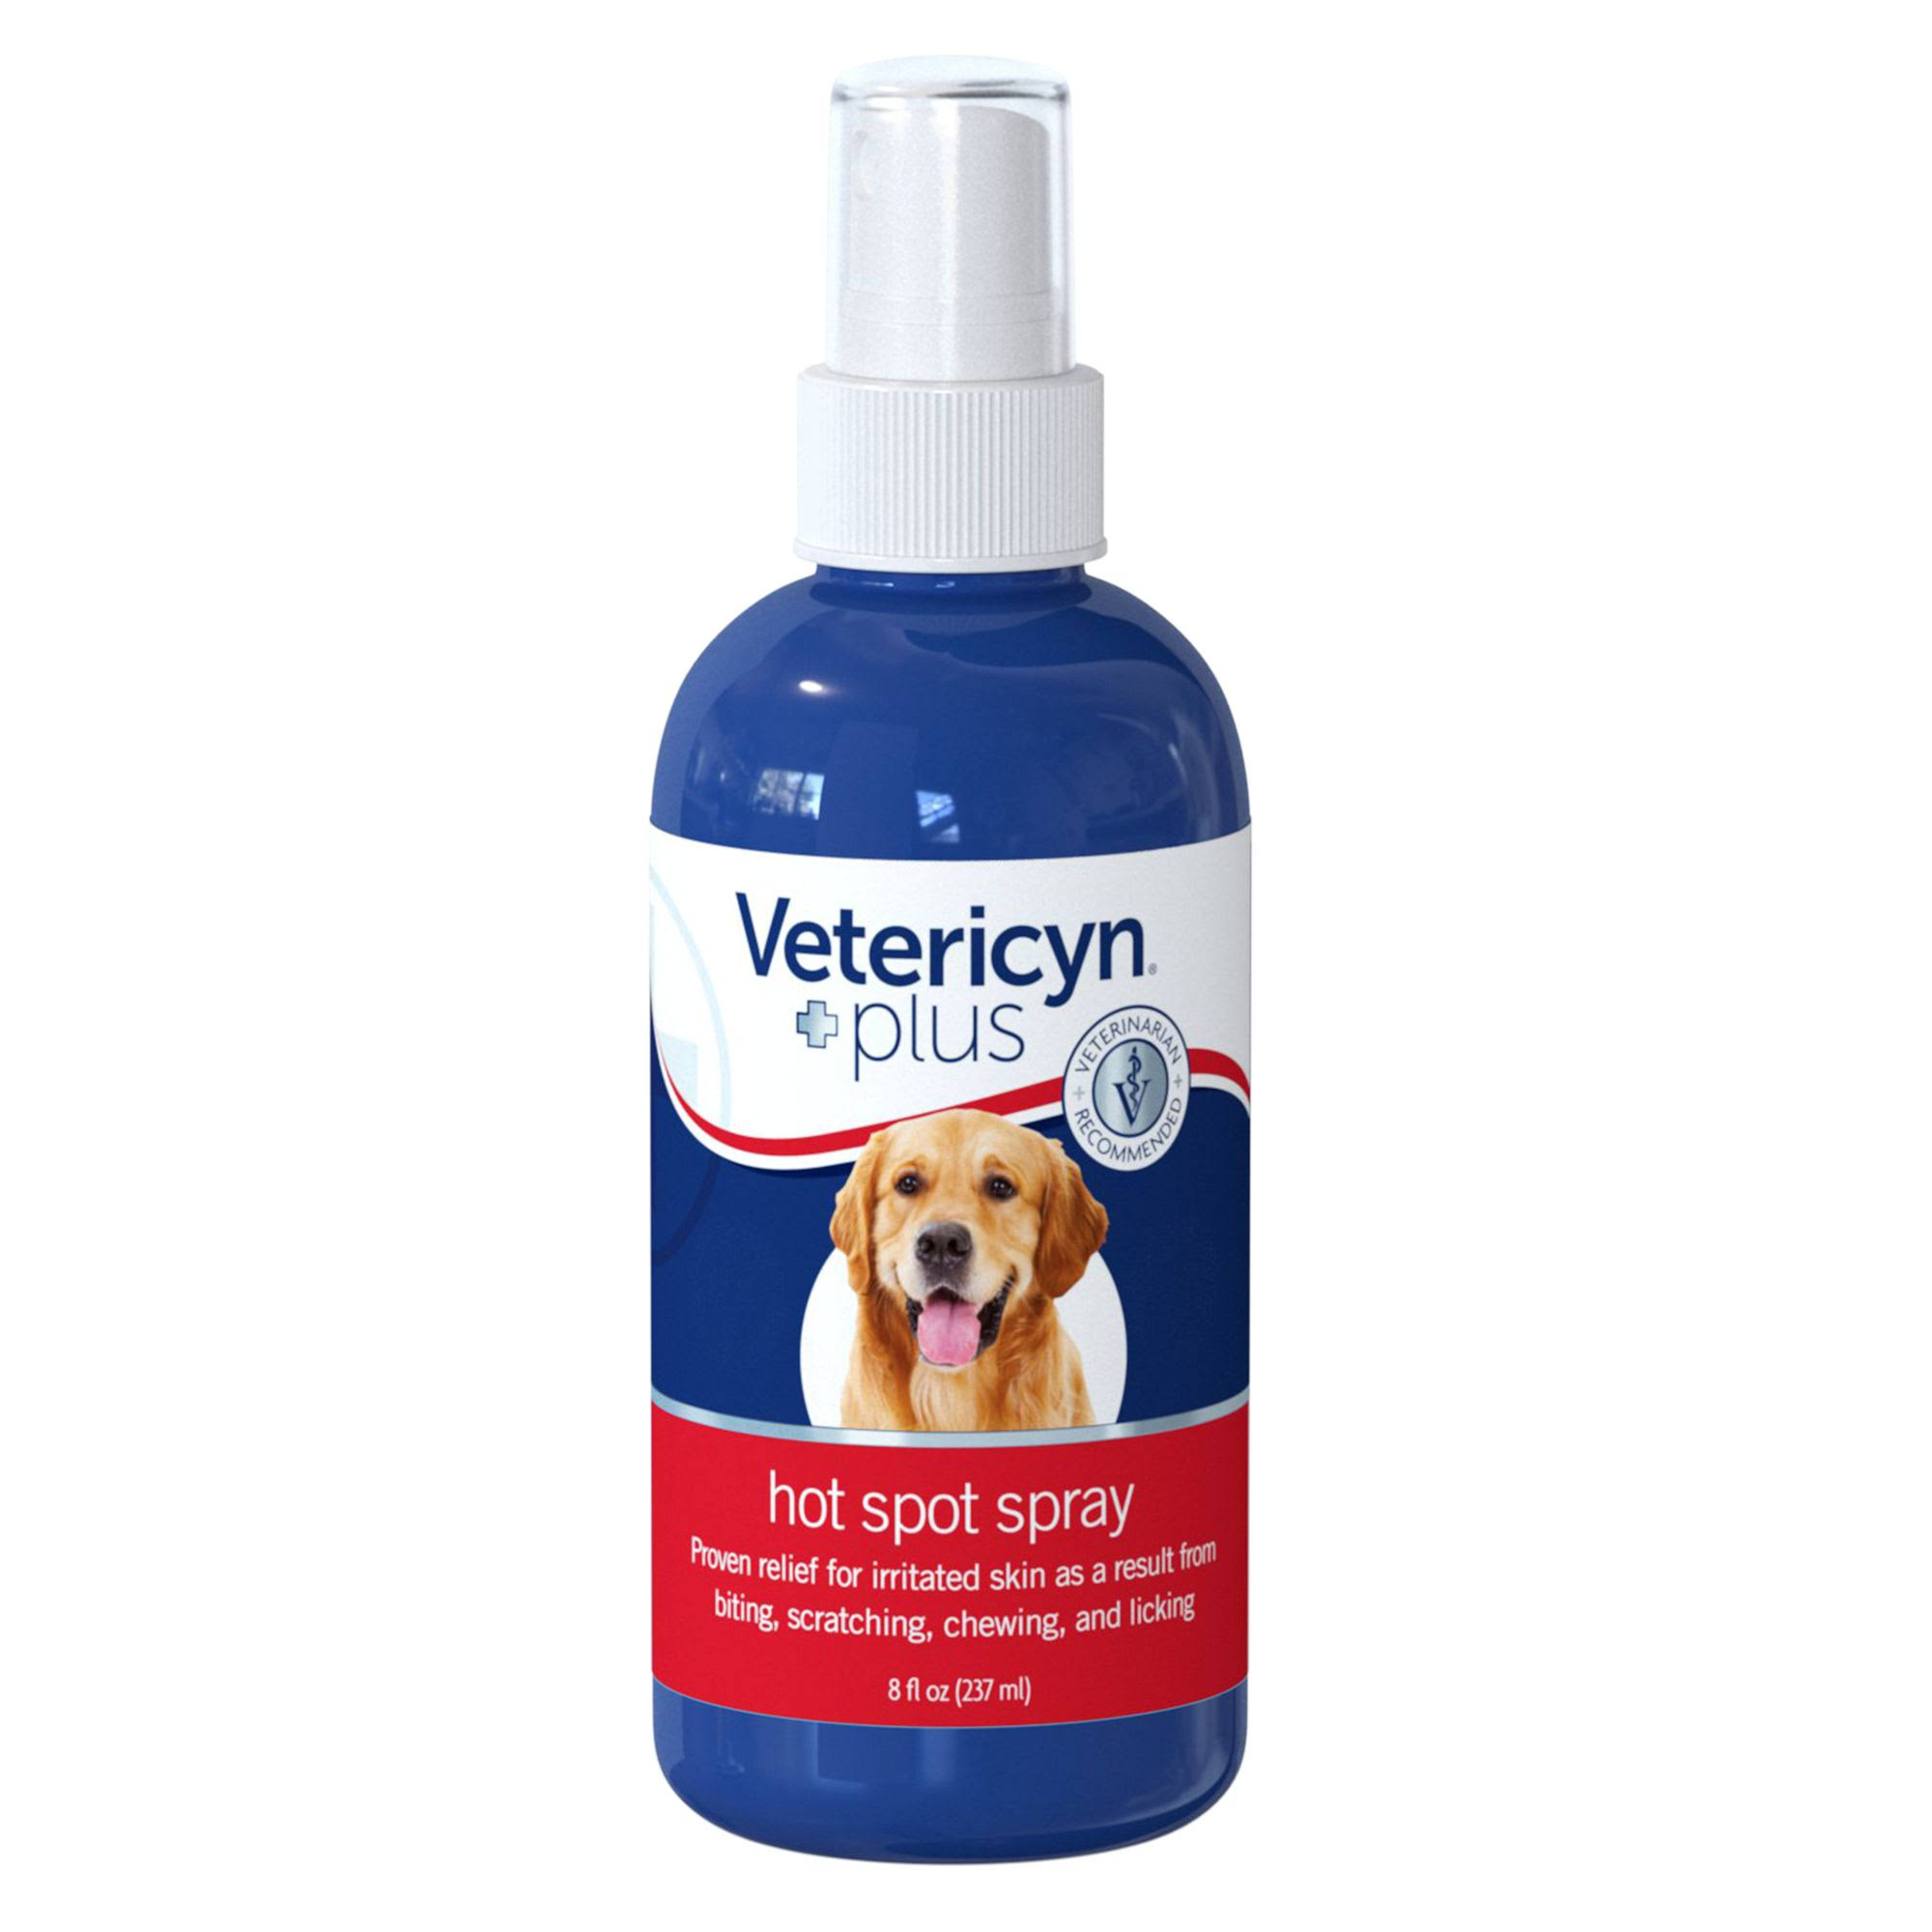 Vetericyn Spot Spray